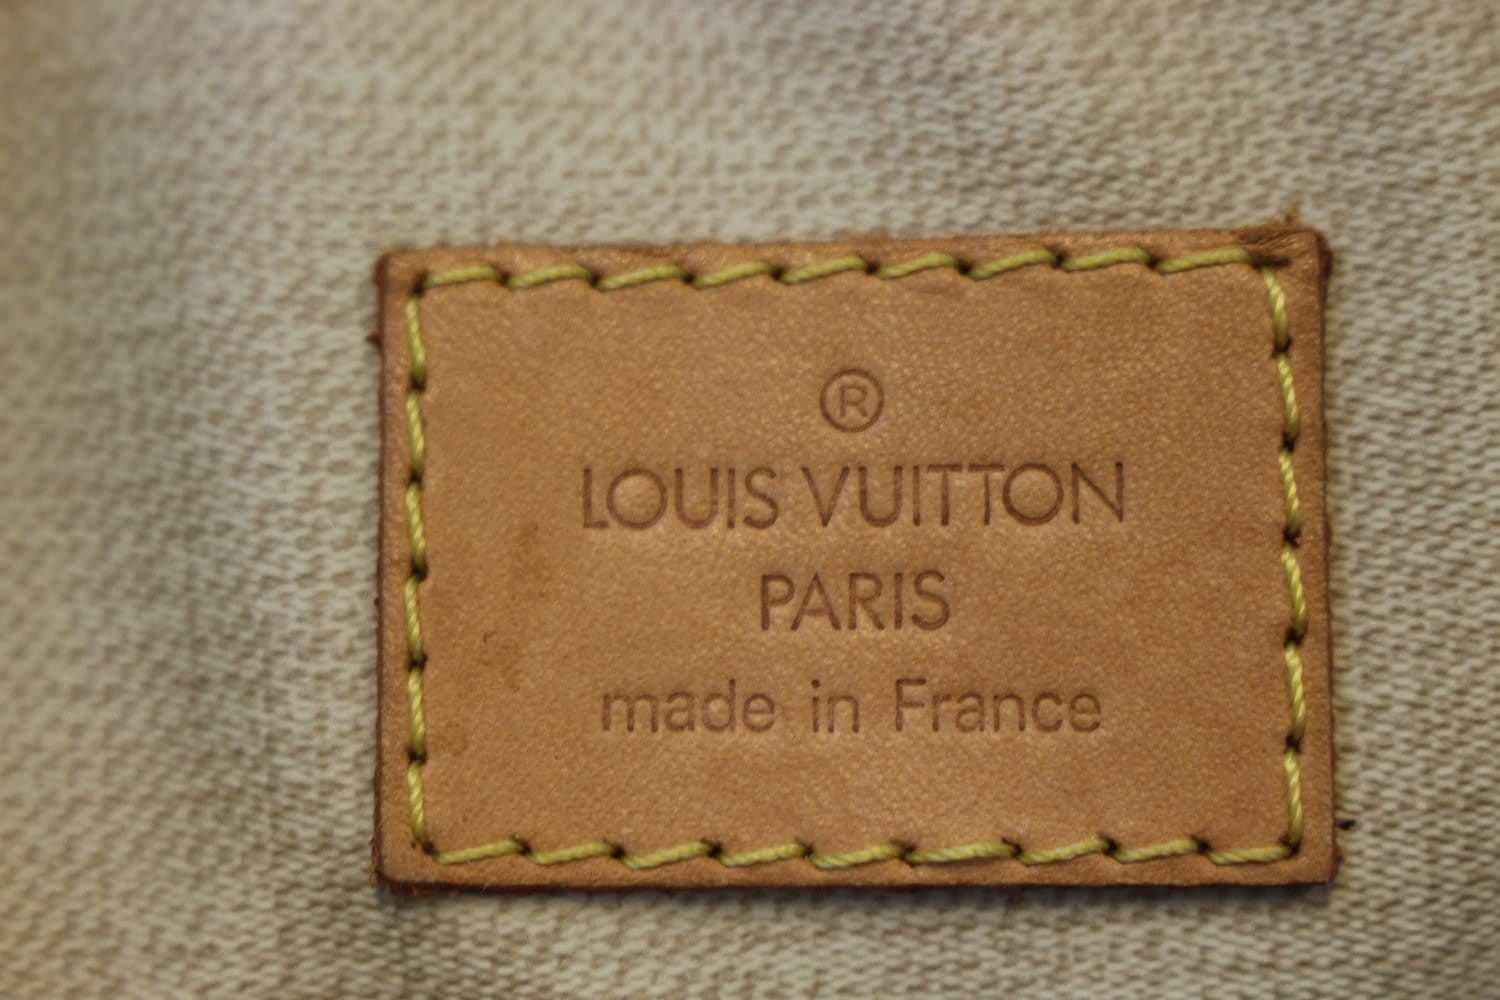 Louis Vuitton Trouville Monogram - THE PURSE AFFAIR